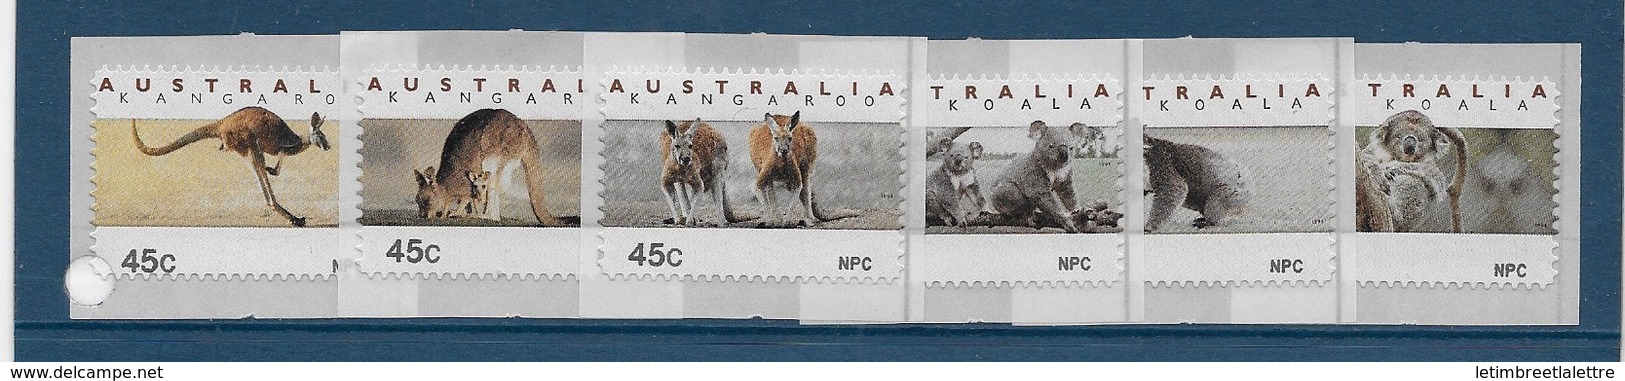 Australie N°1419 à 1424**adhésif - Mint Stamps